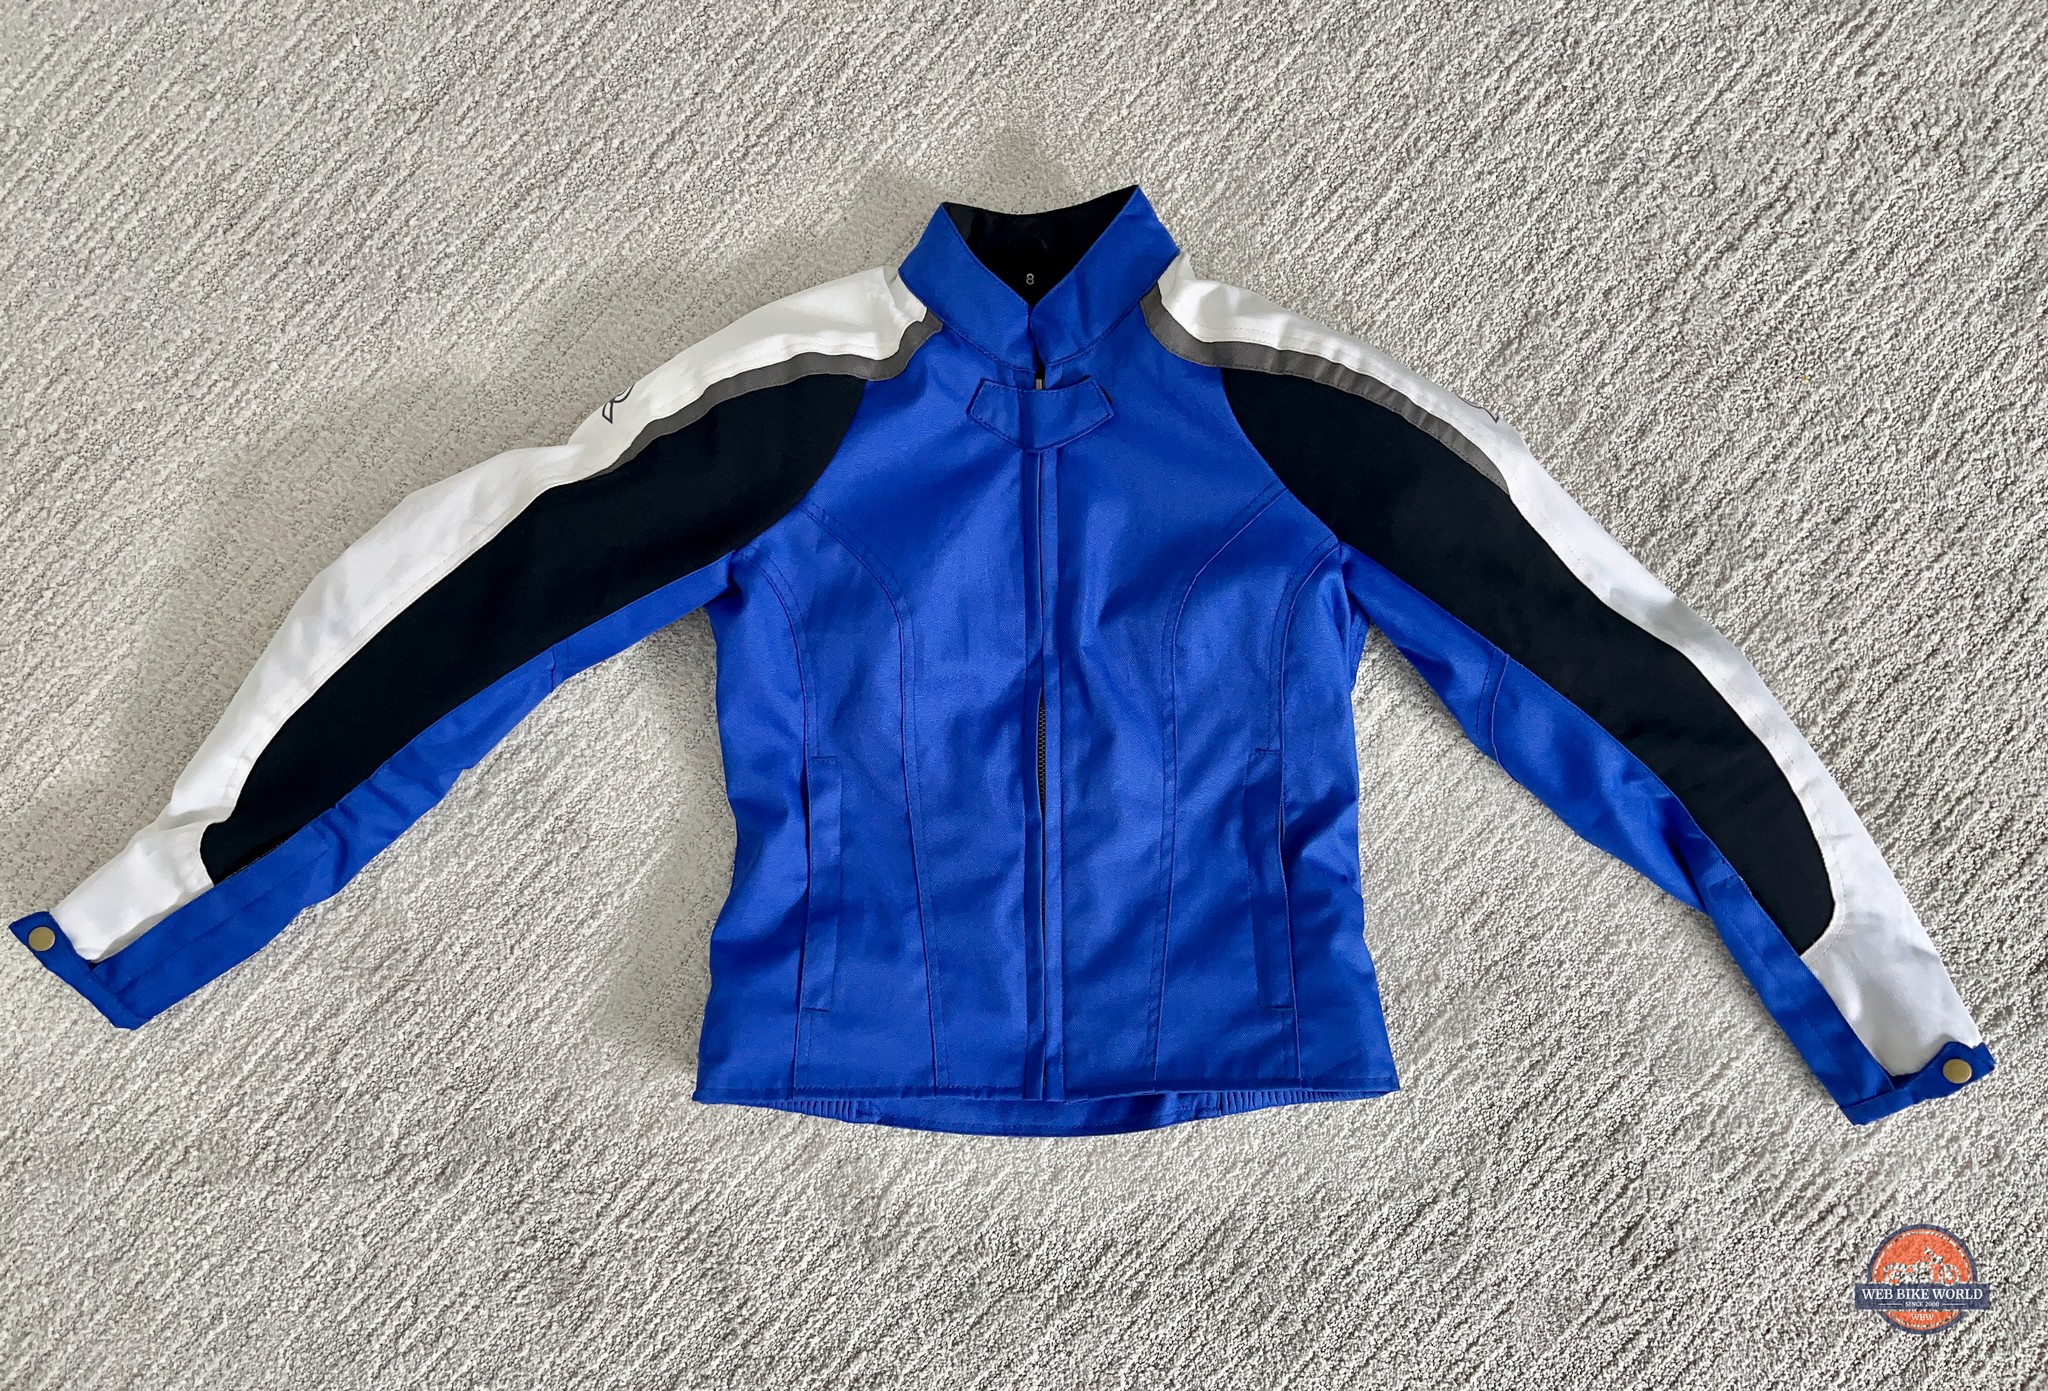 Front photo of the Raven Rova Falcon Textile Jacket